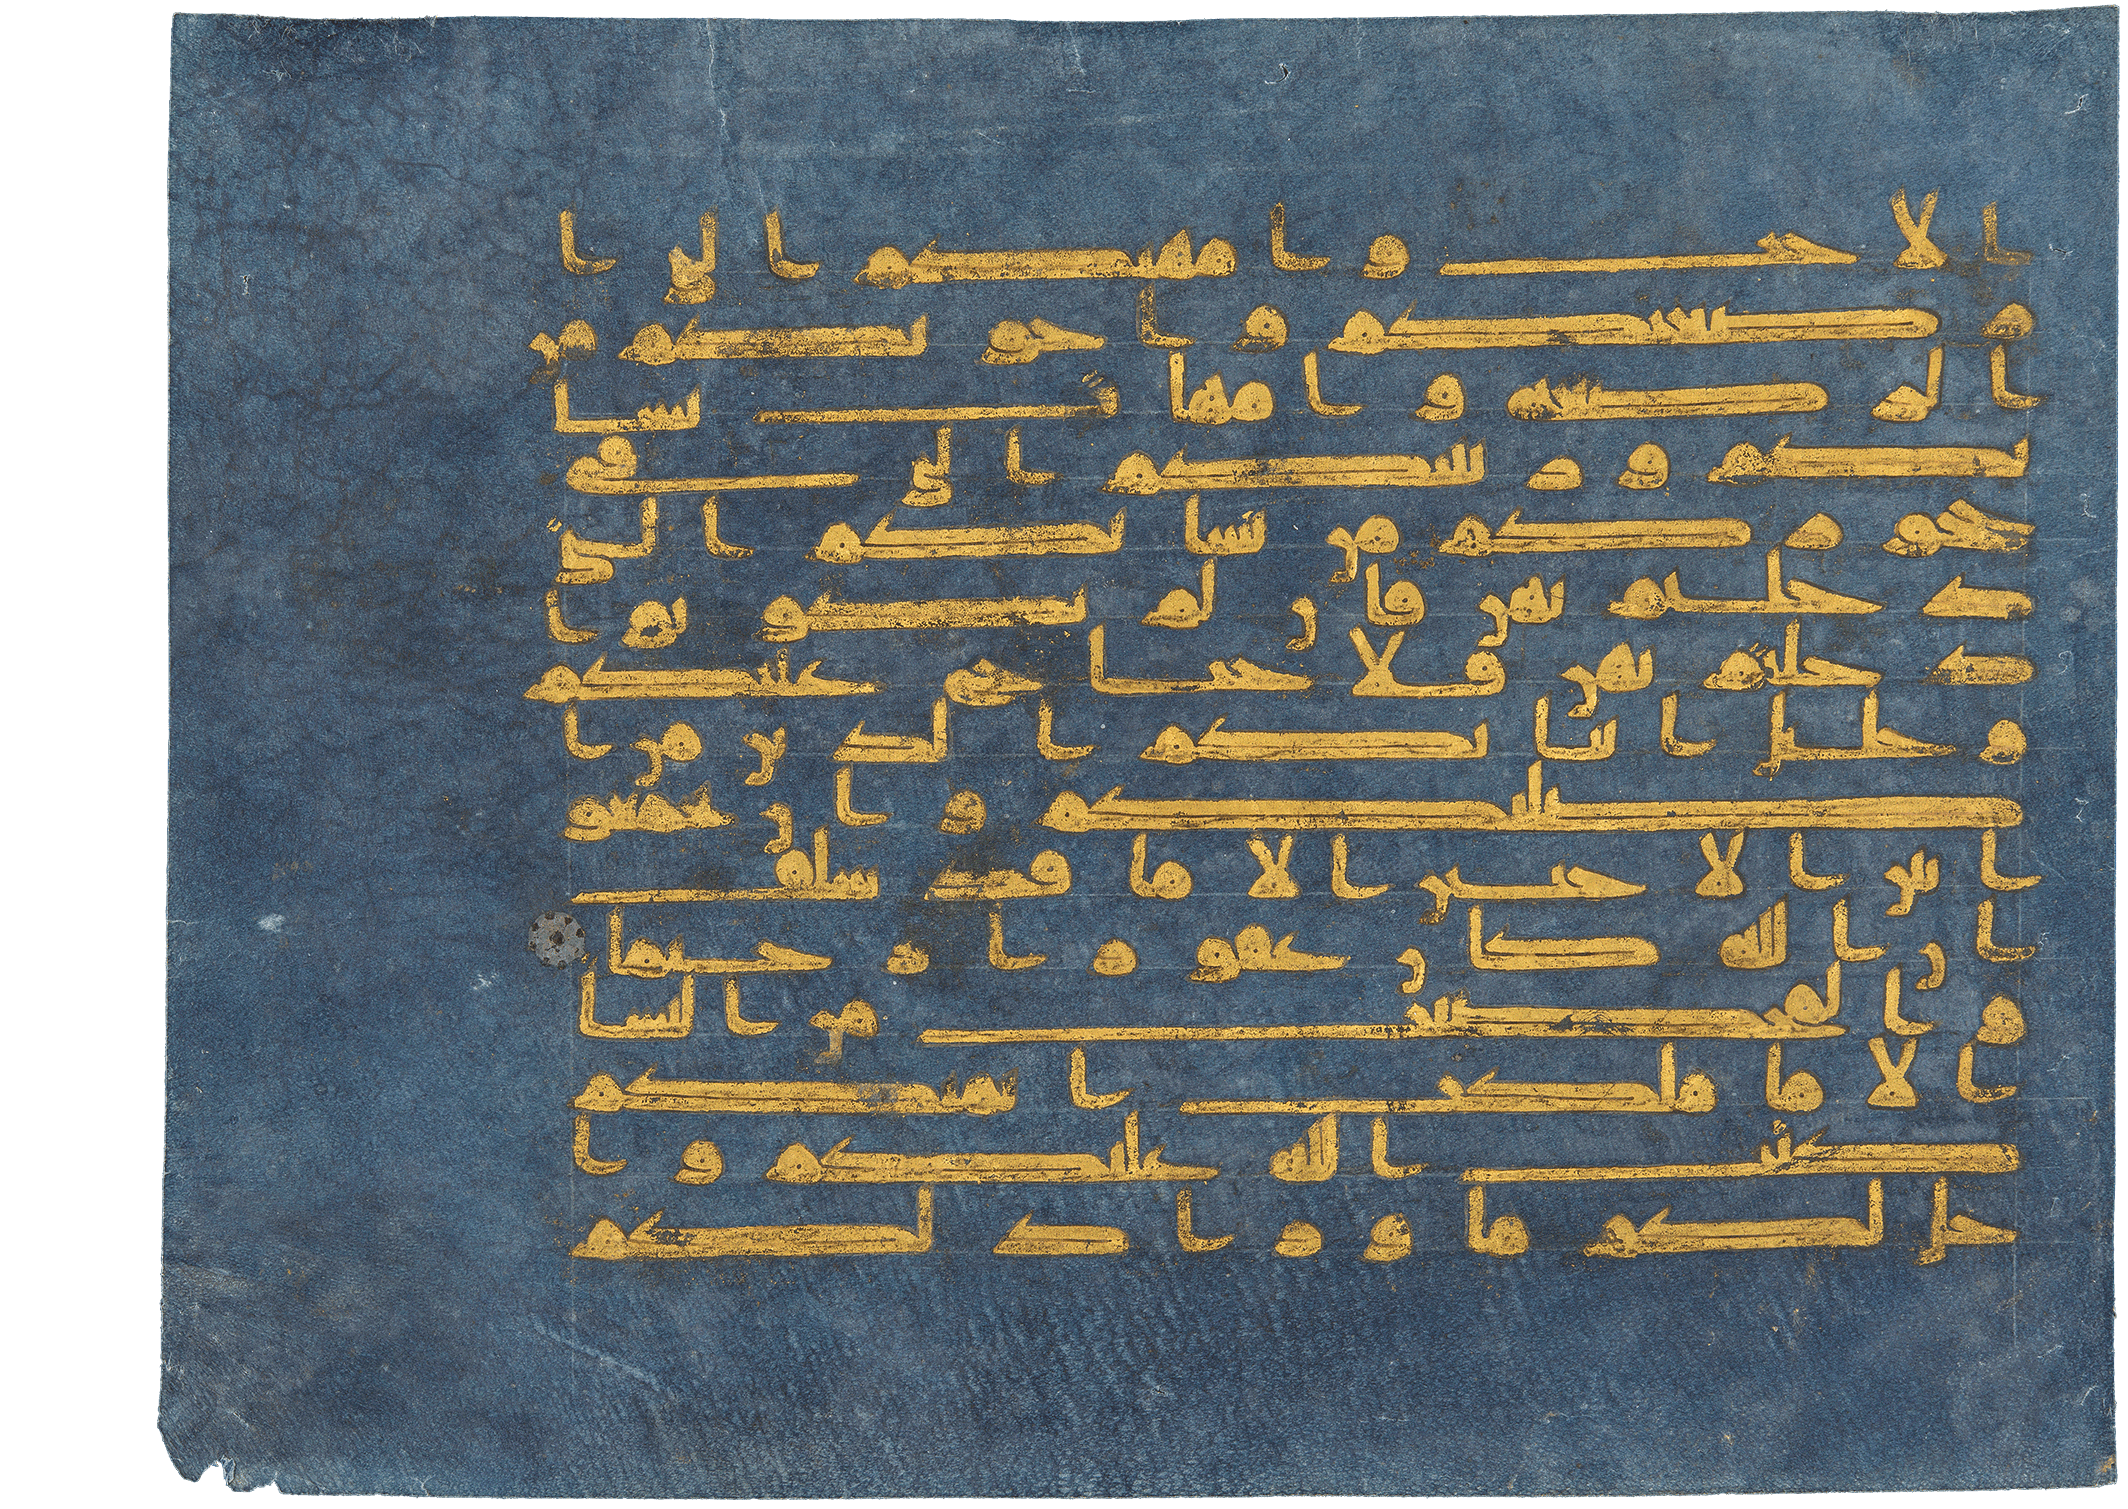 Blauer Koran, Blue Koran, blue Qu'ran, Seite aus dem Blauen Koran (Vers 60 und 61 aus Sure II). Aus: Blue Qur’an, Tunesien, 9.-10. Jh. (Dublin, Chester Beatty Library, CBL Is 1405A, folio 1a), Leaf from the "Blue Qur'an", Blue Qur’an, Tunisia (possibly Qairawan), 3rd-4th century AH/9th–10th century CE